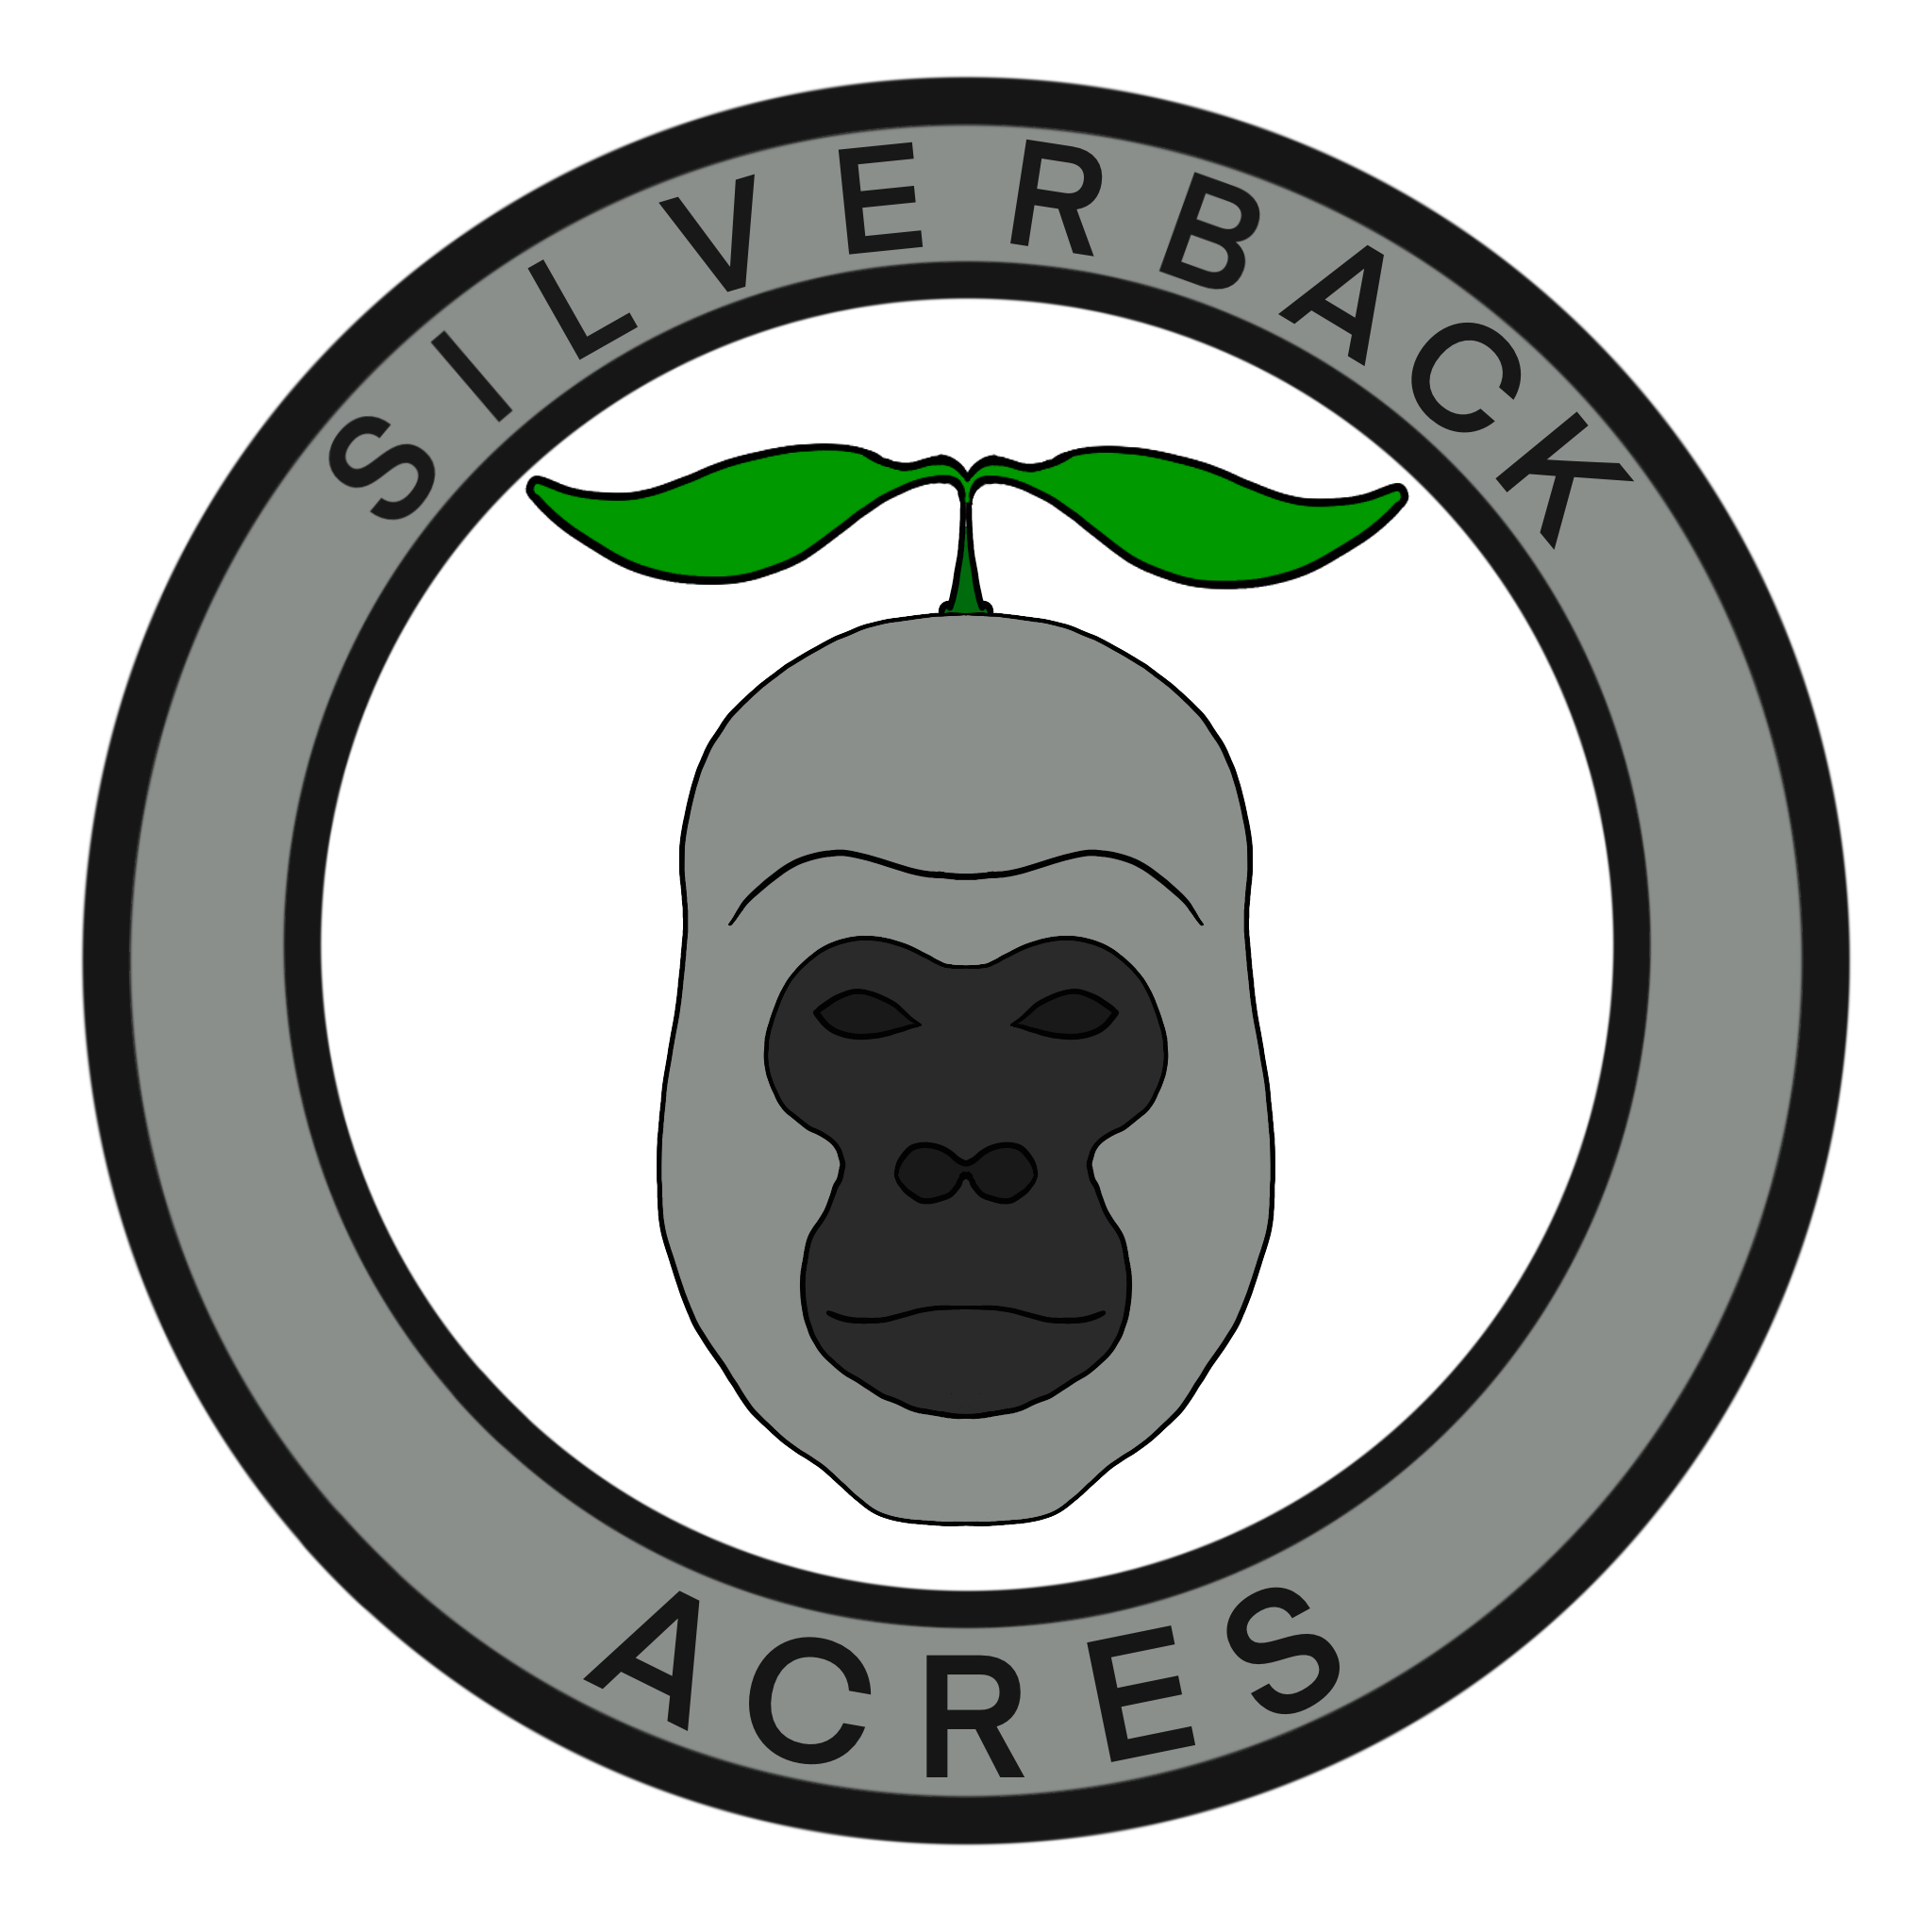 Silverback Acres